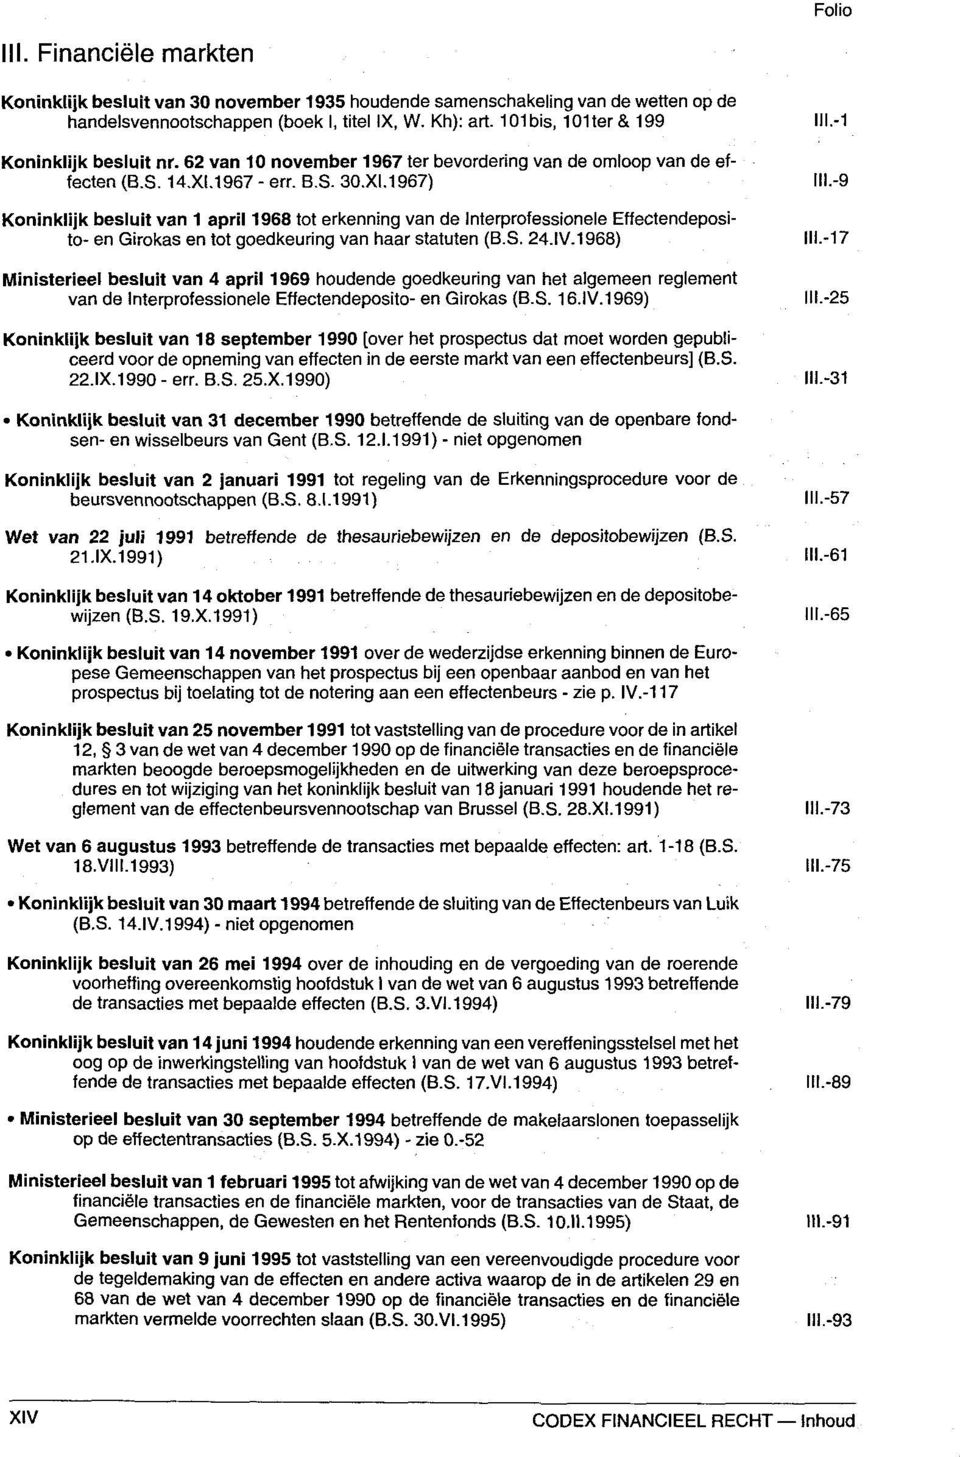 1967 - err. B.S. 30.XI.1967) Koninklijk besluit van 1 april 1968 tot erkenning van de Interprofessionele Effectendeposito- en Girokas en tot goedkeuring van haar Statuten (B.S. 24.IV.